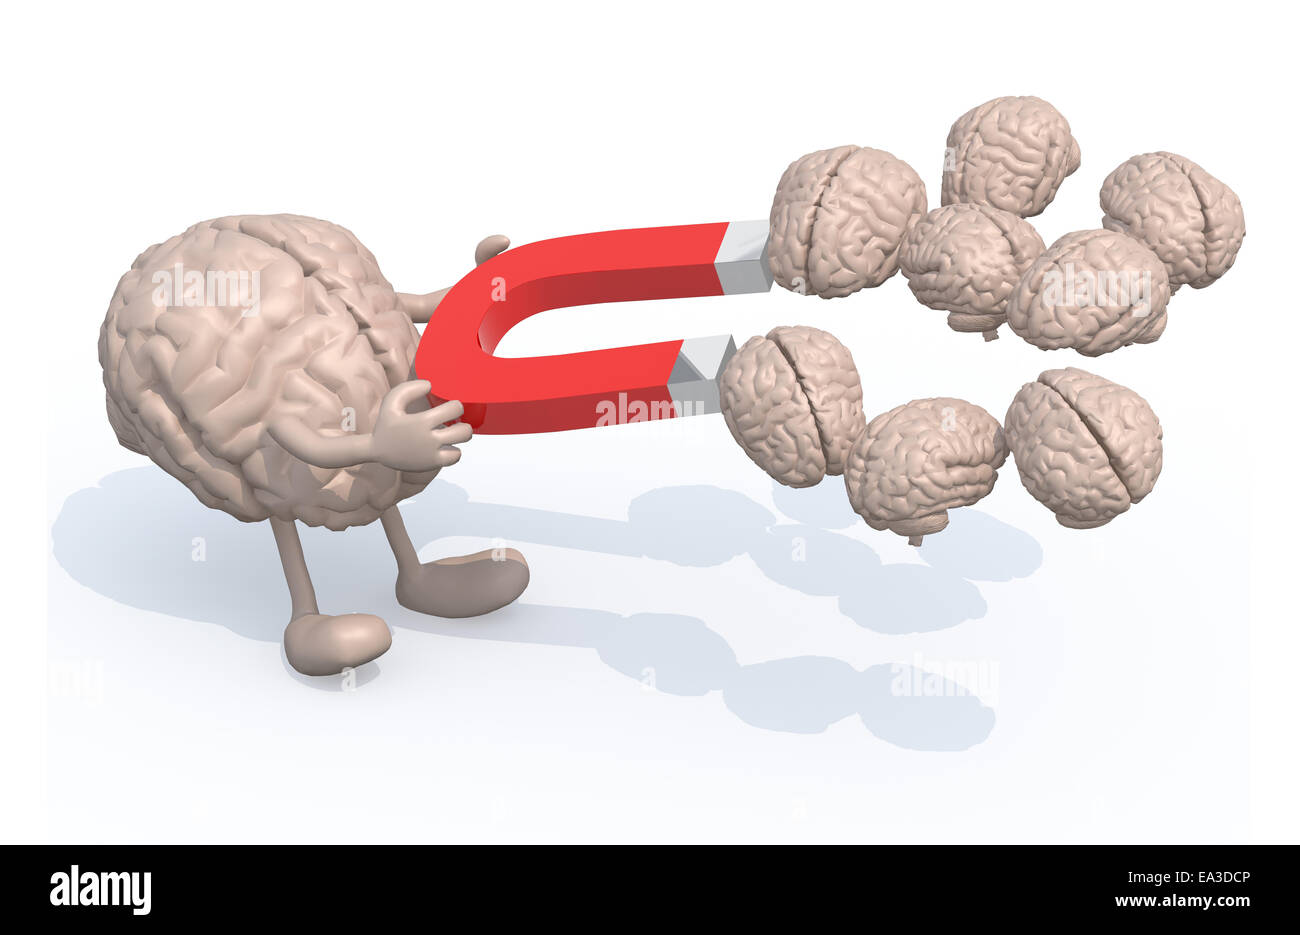 Cerveau humain avec les bras, les jambes et l'aimant sur les mains, attraper beaucoup de d'autres cerveaux, 3d illustration Banque D'Images